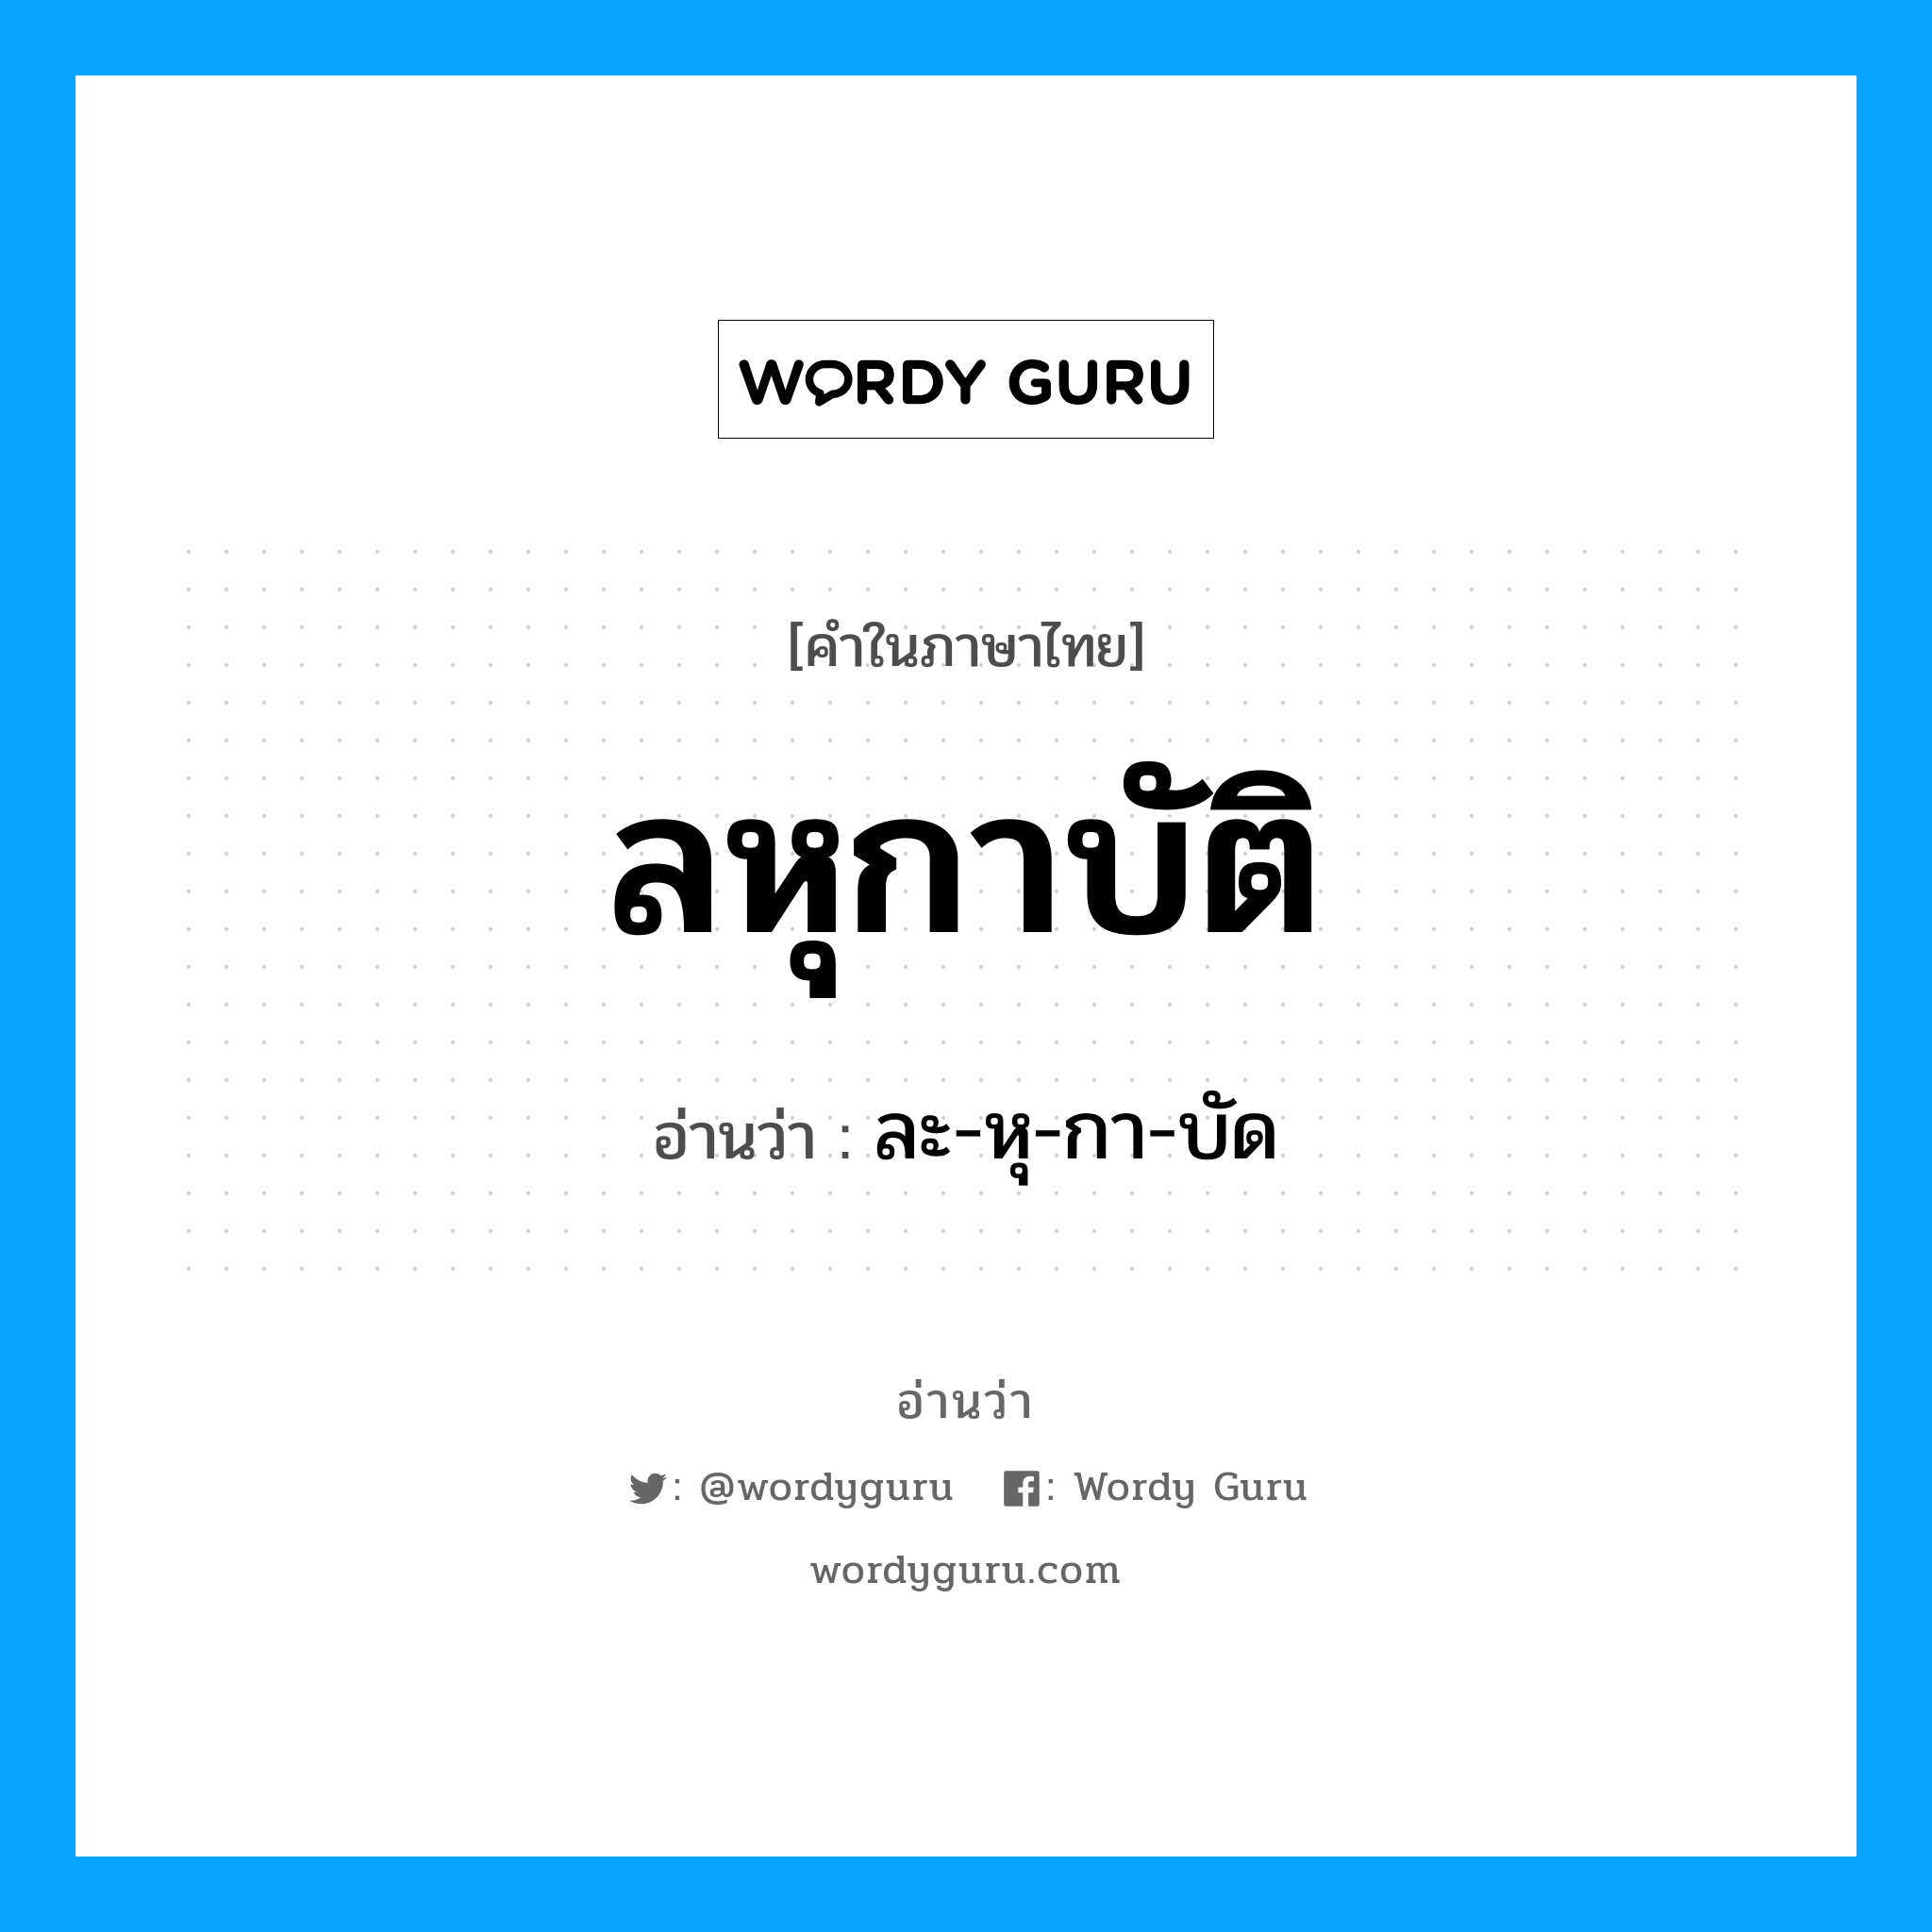 ละ-หุ-กา-บัด เป็นคำอ่านของคำไหน?, คำในภาษาไทย ละ-หุ-กา-บัด อ่านว่า ลหุกาบัติ